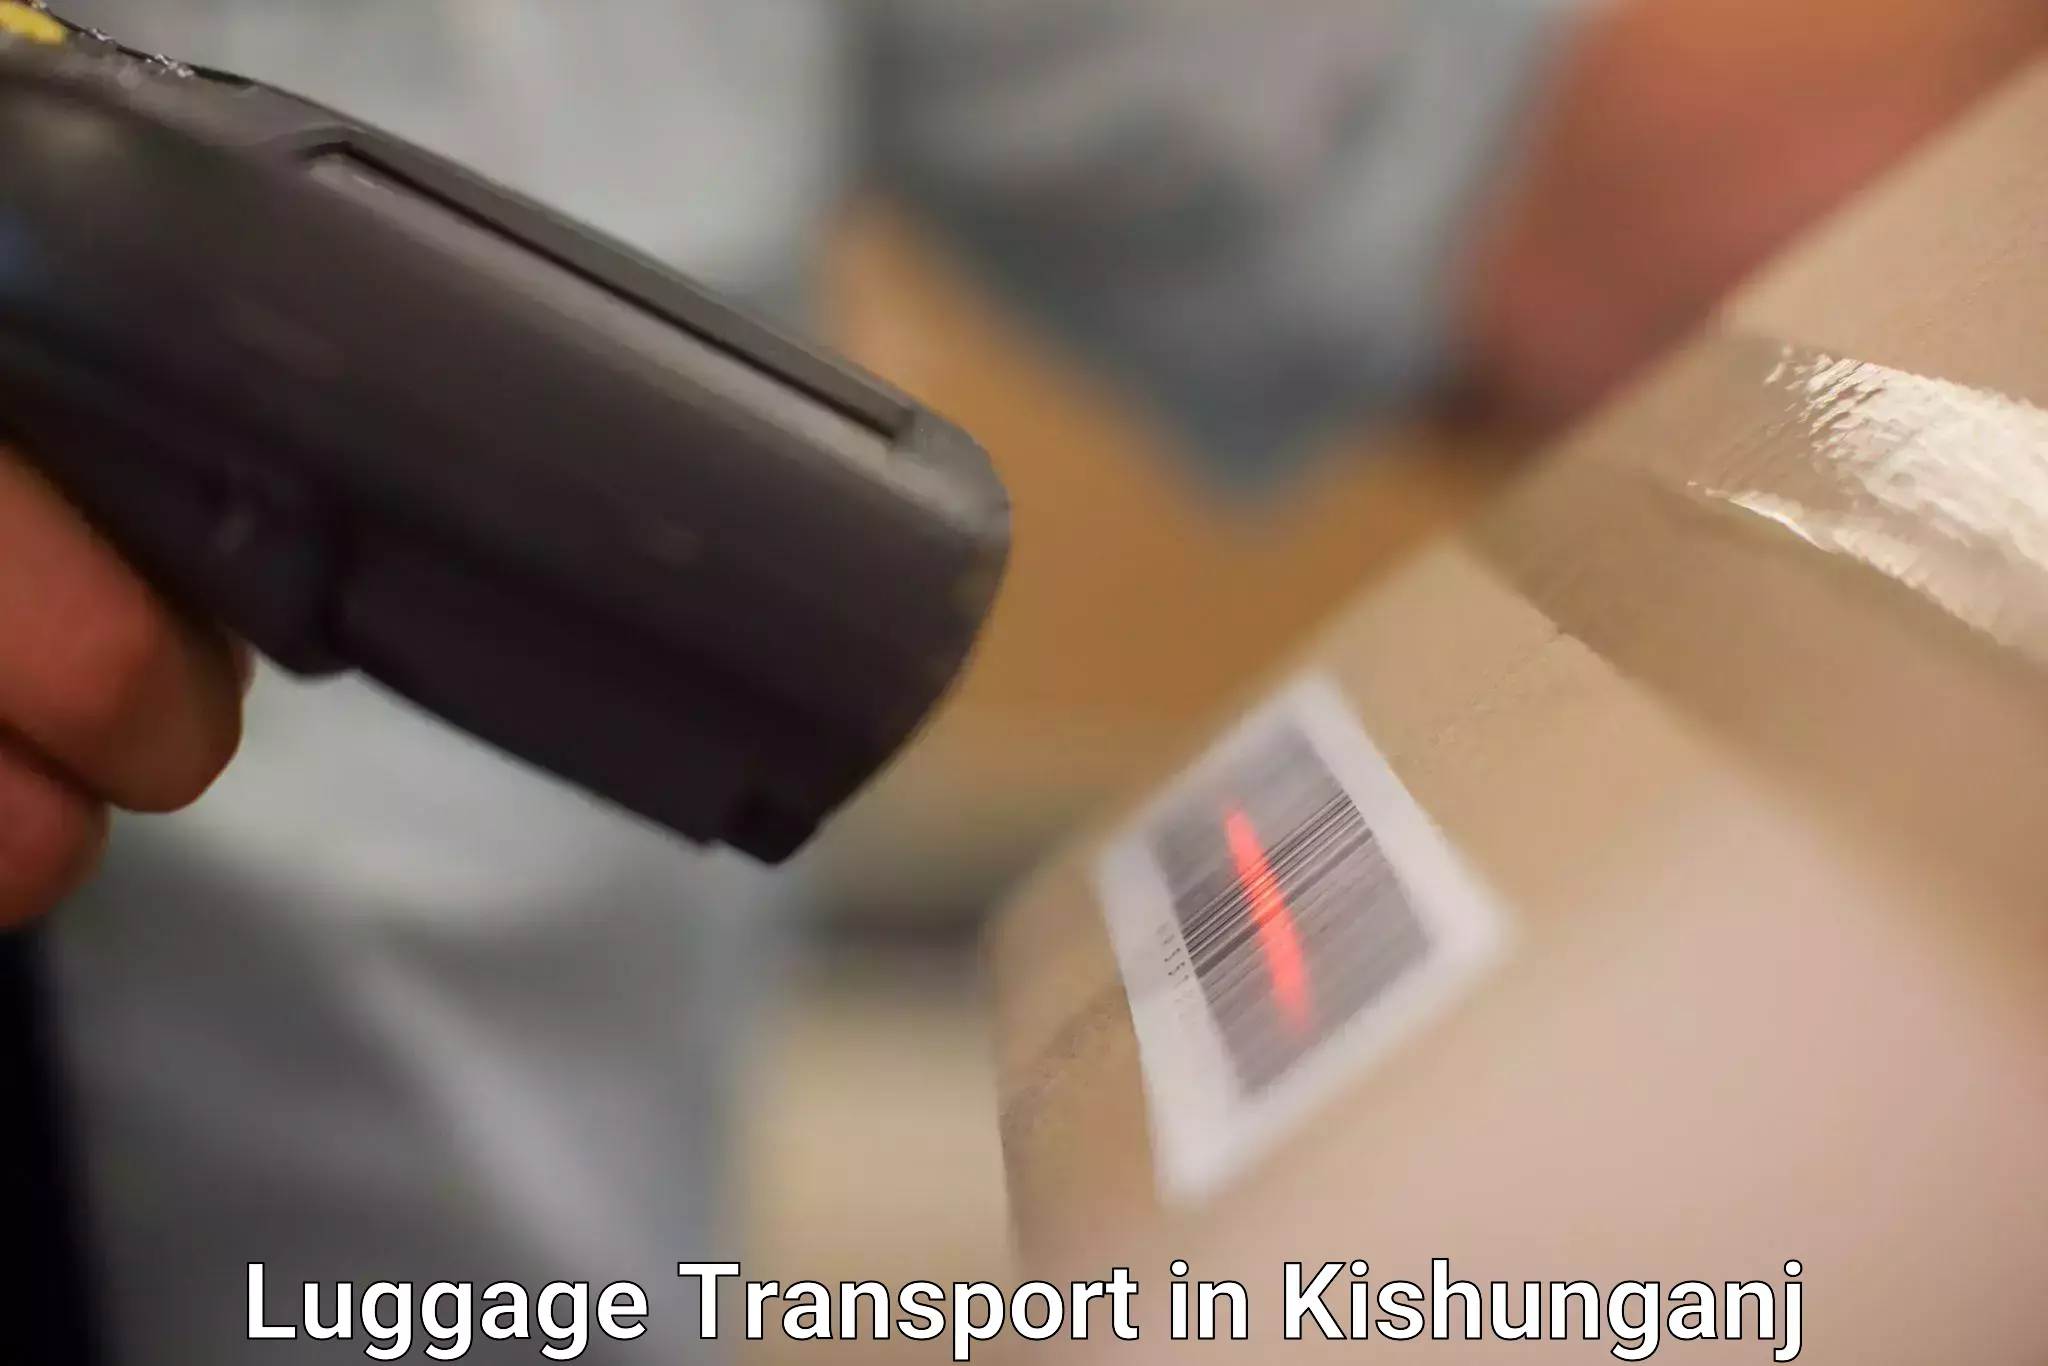 Baggage transport innovation in Kishunganj